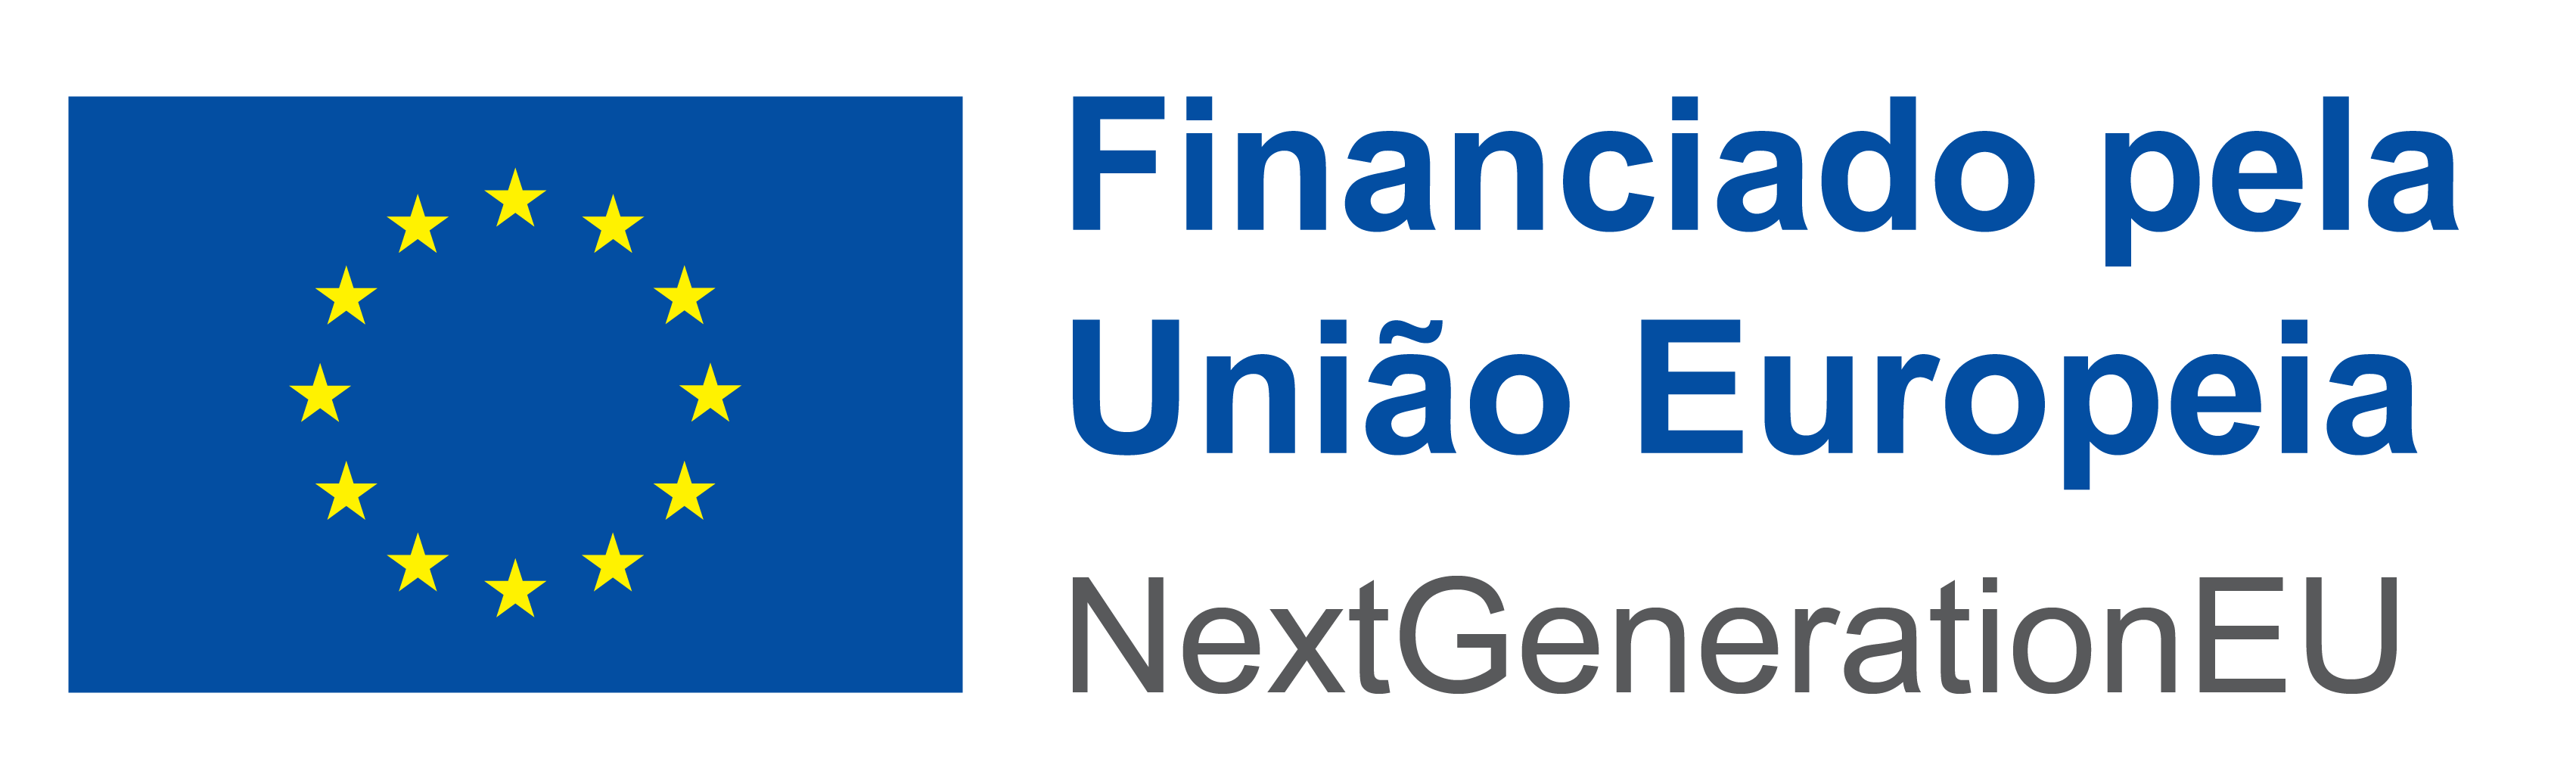 Logo de Financiado pela União Europeia